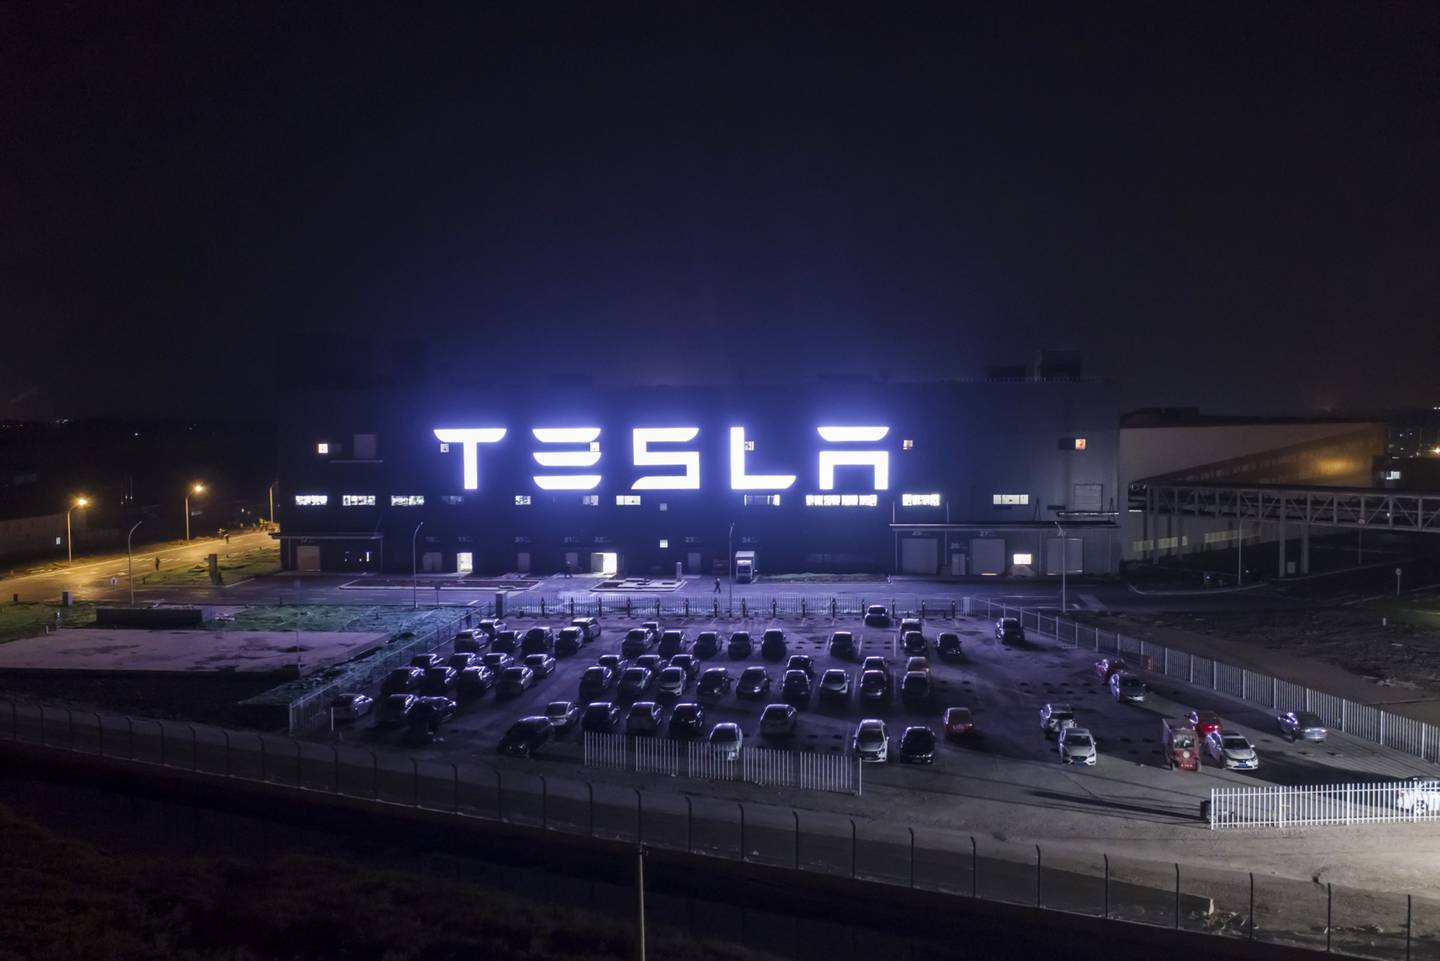 La Gigafábrica de Tesla Inc. Gigafactory permanece iluminada por la noche en Shanghái, China, el viernes 1 de noviembre de 2019. Fotógrafo: Qilai Shen/Bloomberg